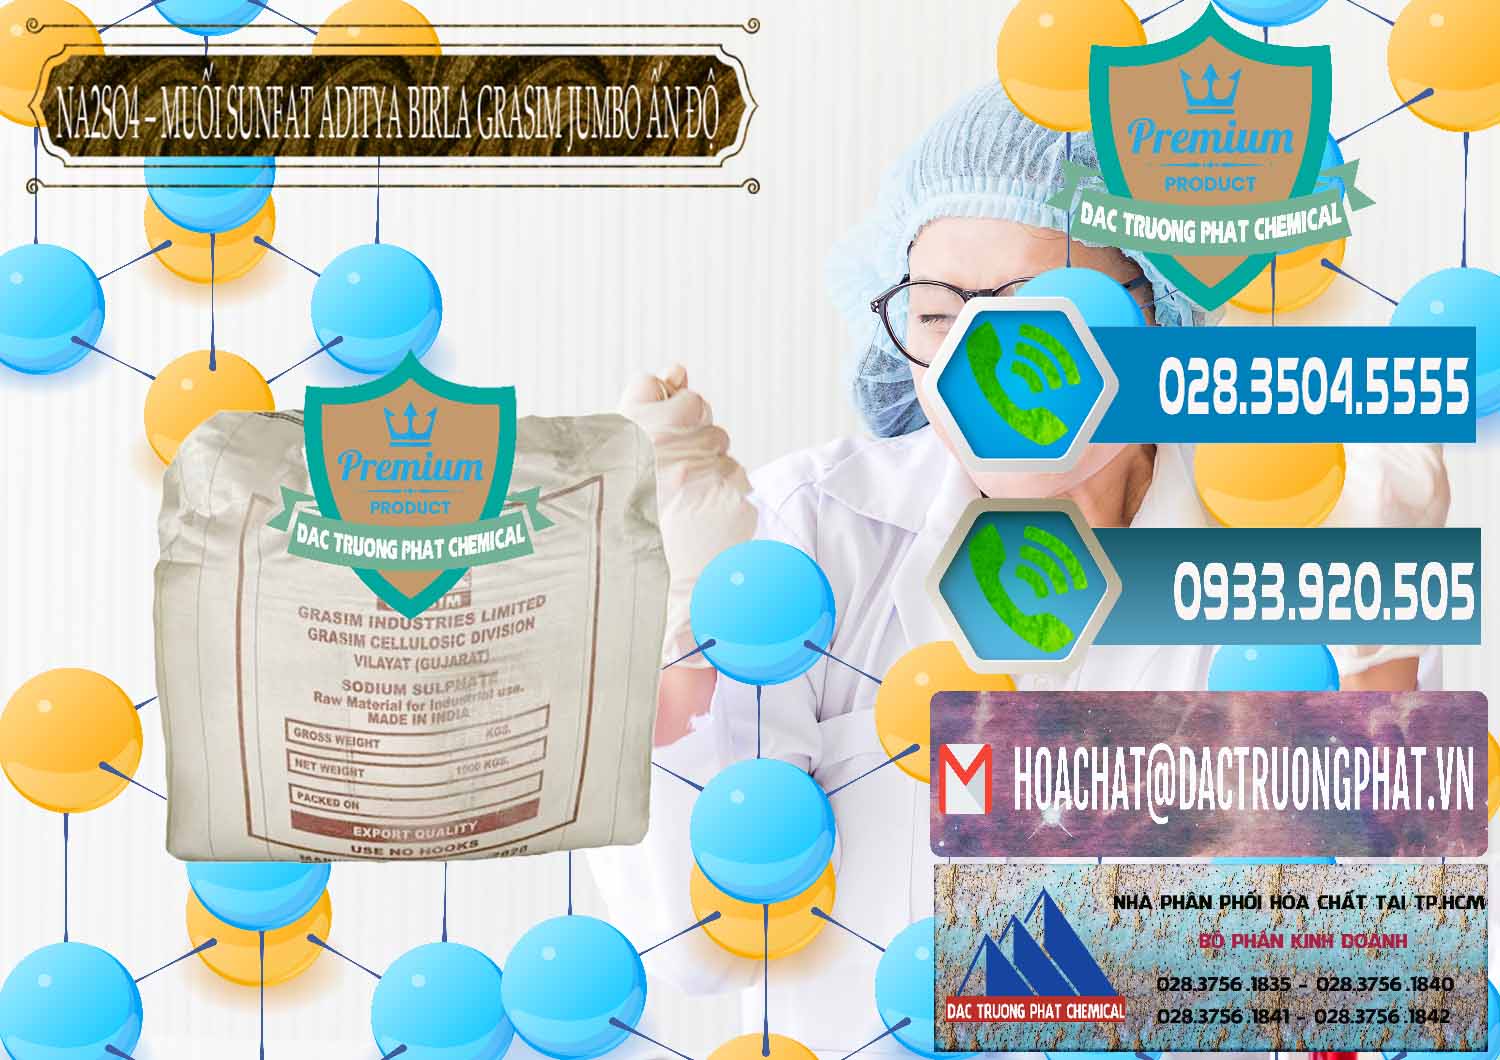 Công ty chuyên cung cấp - bán Sodium Sulphate - Muối Sunfat Na2SO4 Jumbo Bành Aditya Birla Grasim Ấn Độ India - 0357 - Công ty chuyên kinh doanh _ cung cấp hóa chất tại TP.HCM - congtyhoachat.net